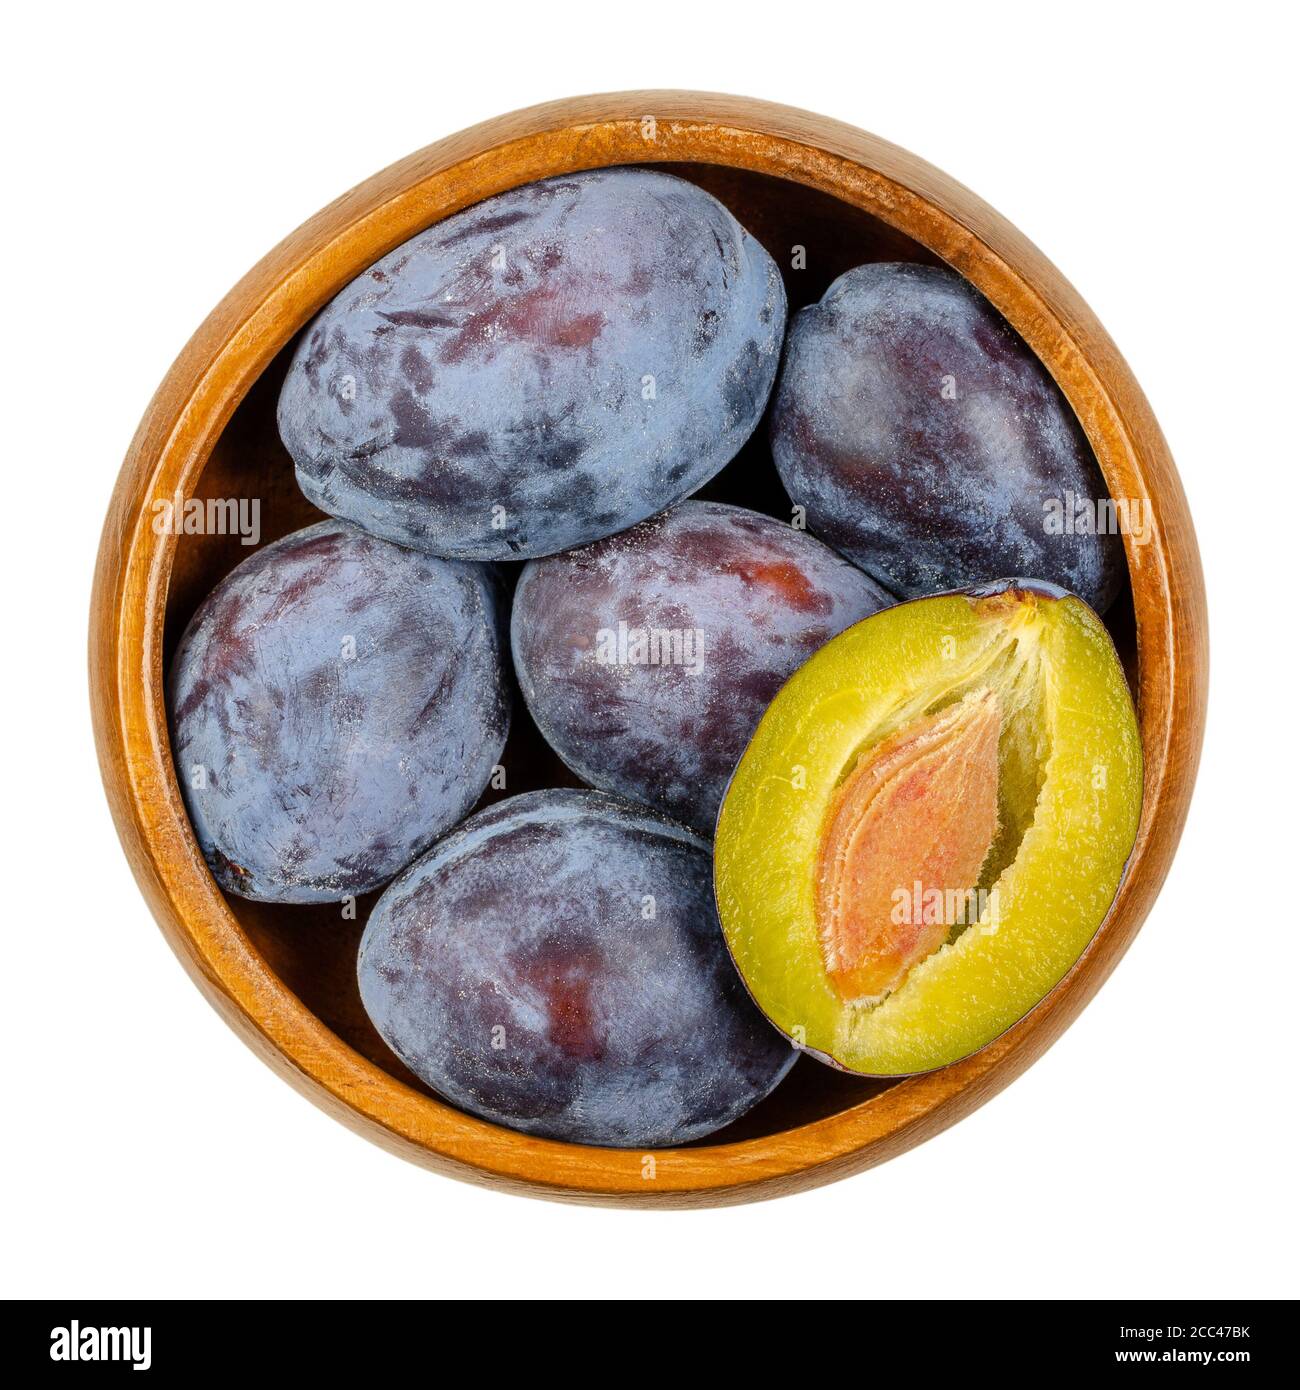 Reife europäische Pflaumen mit Querschnitt einer Frucht in einer Holzschale. Freestone Frucht mit violetter, violetter und schwarzer Haut, auch Damson genannt. Stockfoto